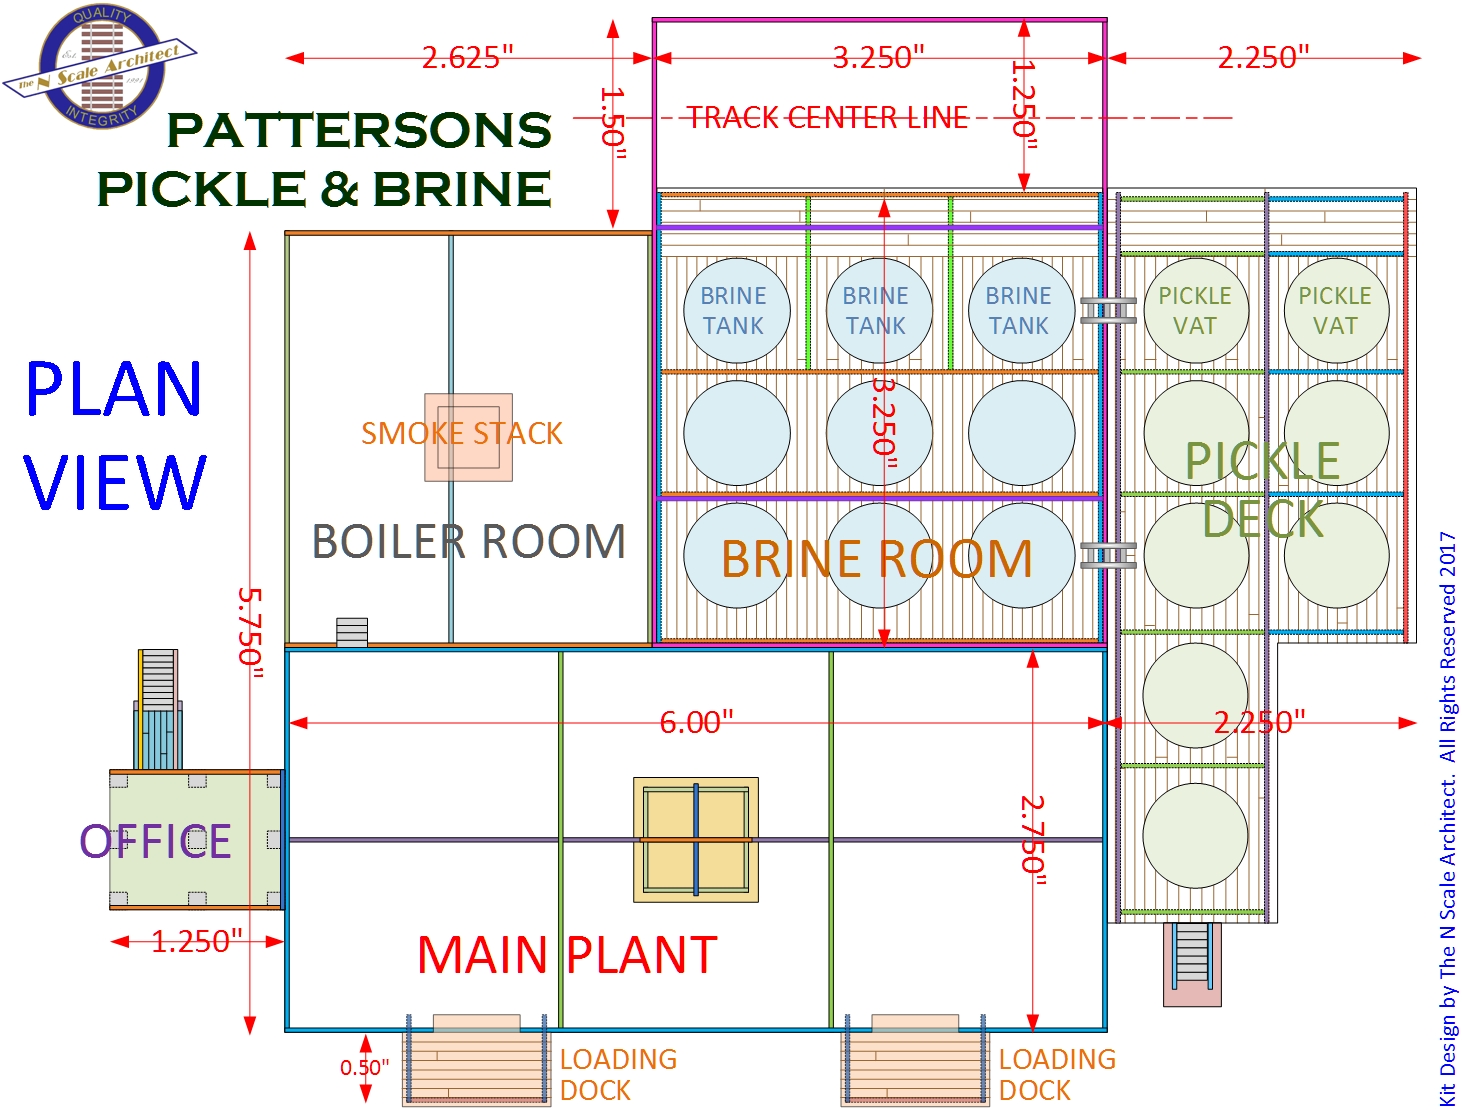 Pattersons Pickle & Brine Kit - Plan View